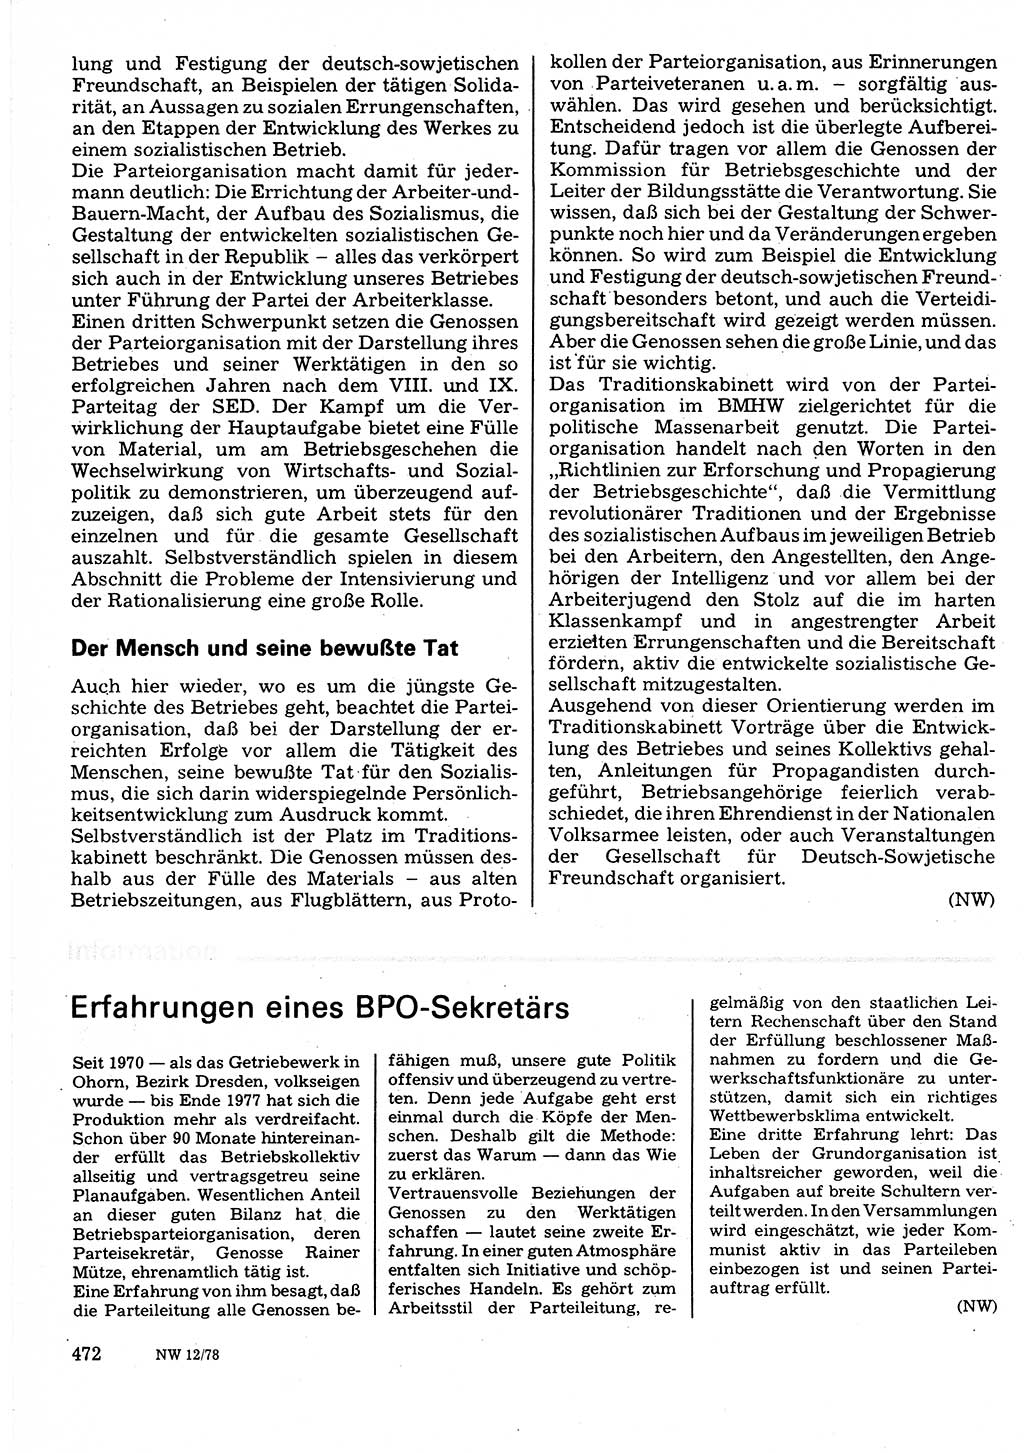 Neuer Weg (NW), Organ des Zentralkomitees (ZK) der SED (Sozialistische Einheitspartei Deutschlands) für Fragen des Parteilebens, 33. Jahrgang [Deutsche Demokratische Republik (DDR)] 1978, Seite 472 (NW ZK SED DDR 1978, S. 472)